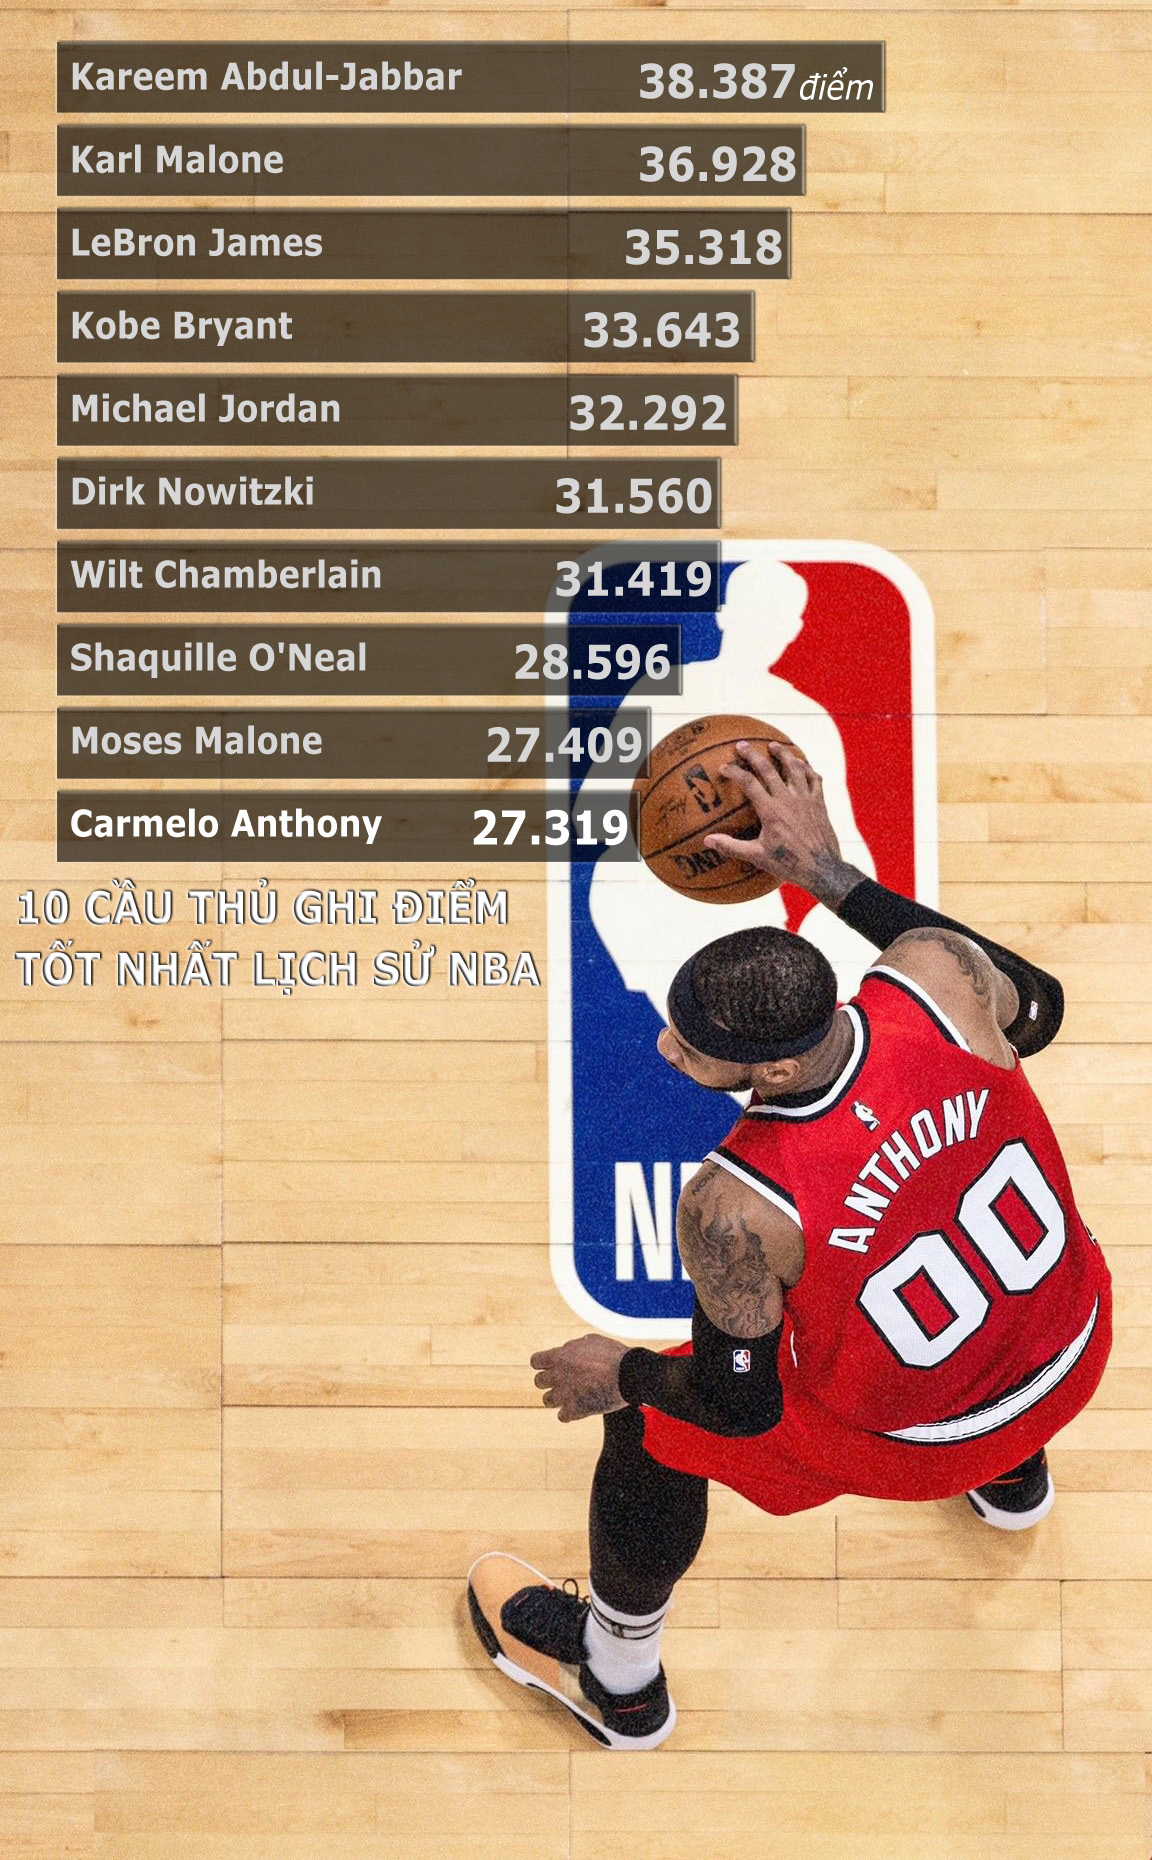 Carmelo Anthony đi vào lịch sử NBA - Ảnh 1